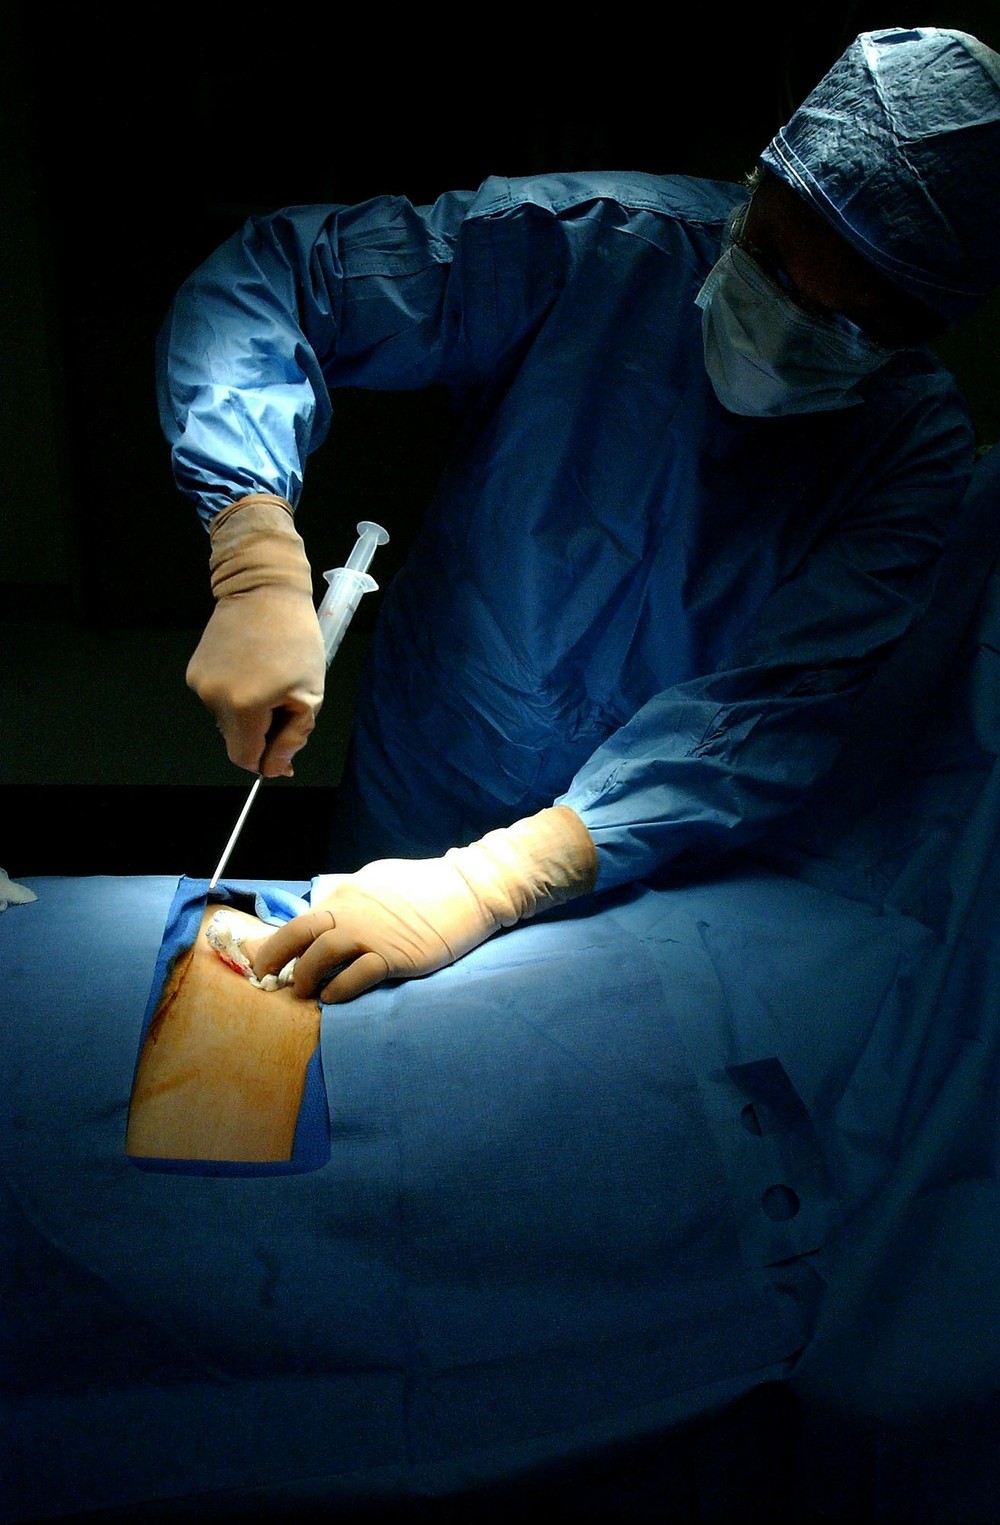 Novo material pode substituir transplante de medula óssea, diz estudo